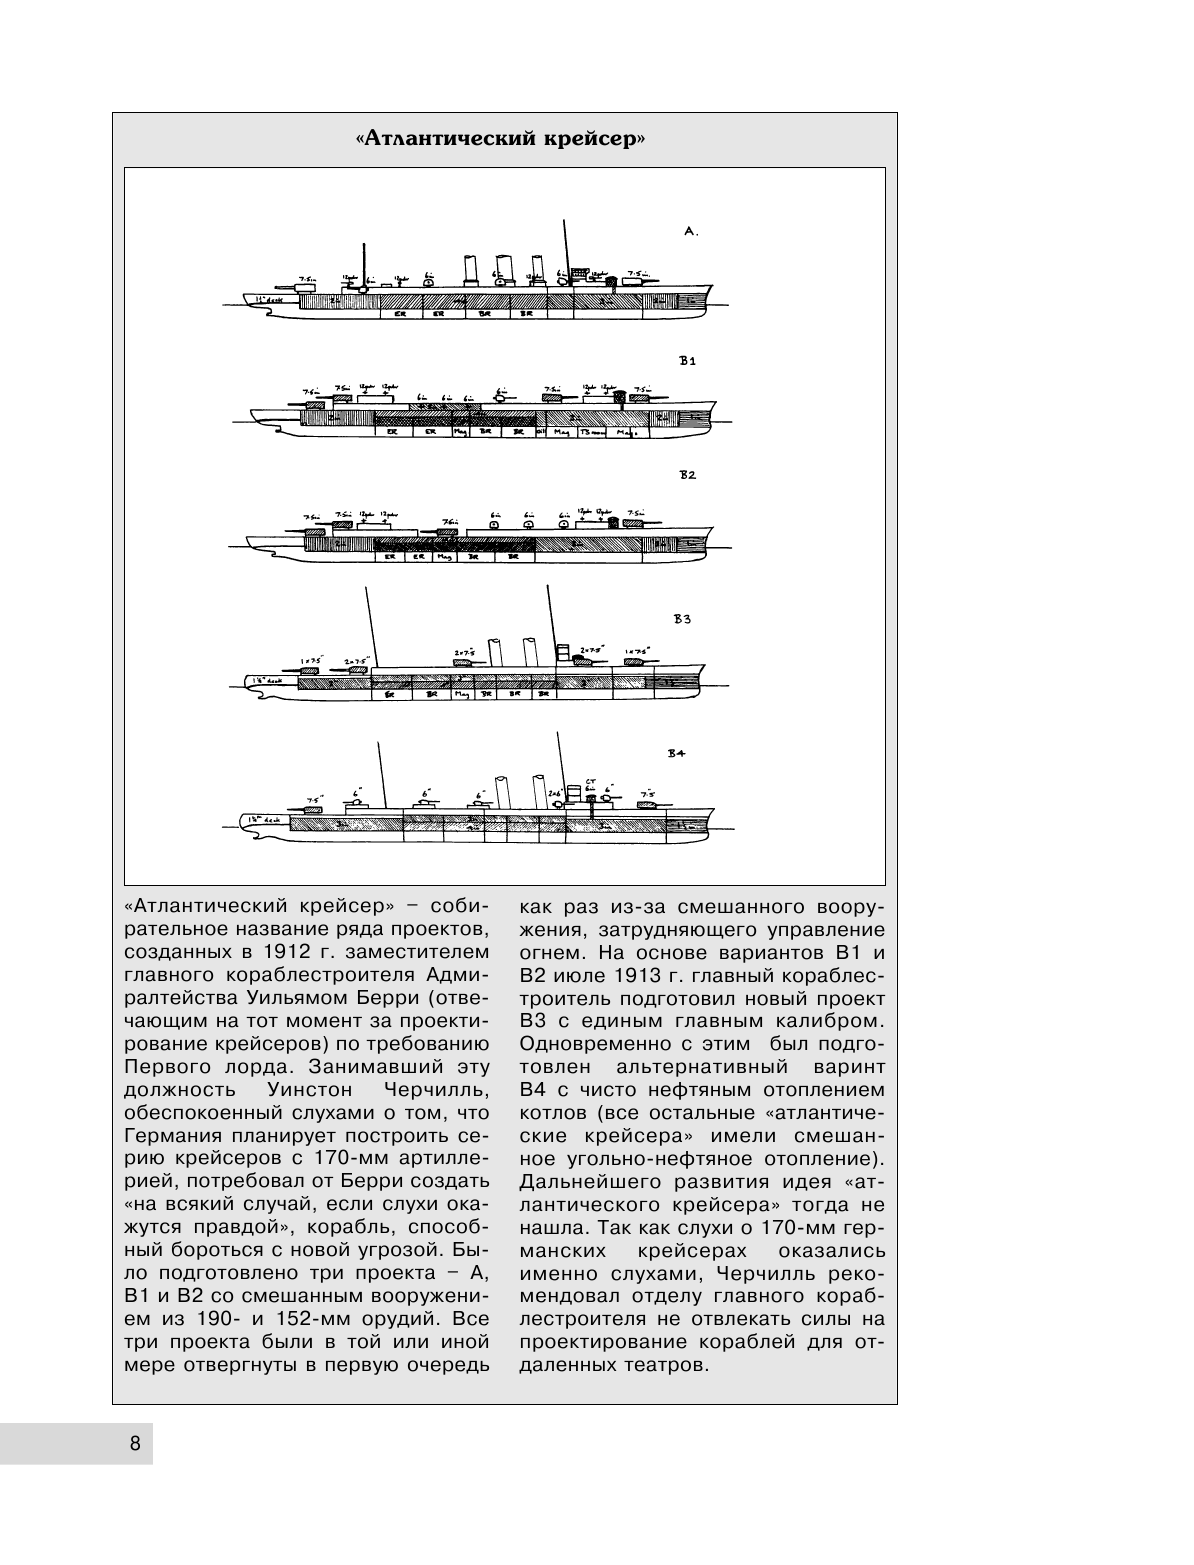 Британские крейсера типа «Хокинс». Предтечи «вашингтонских крейсеров» - фото №9